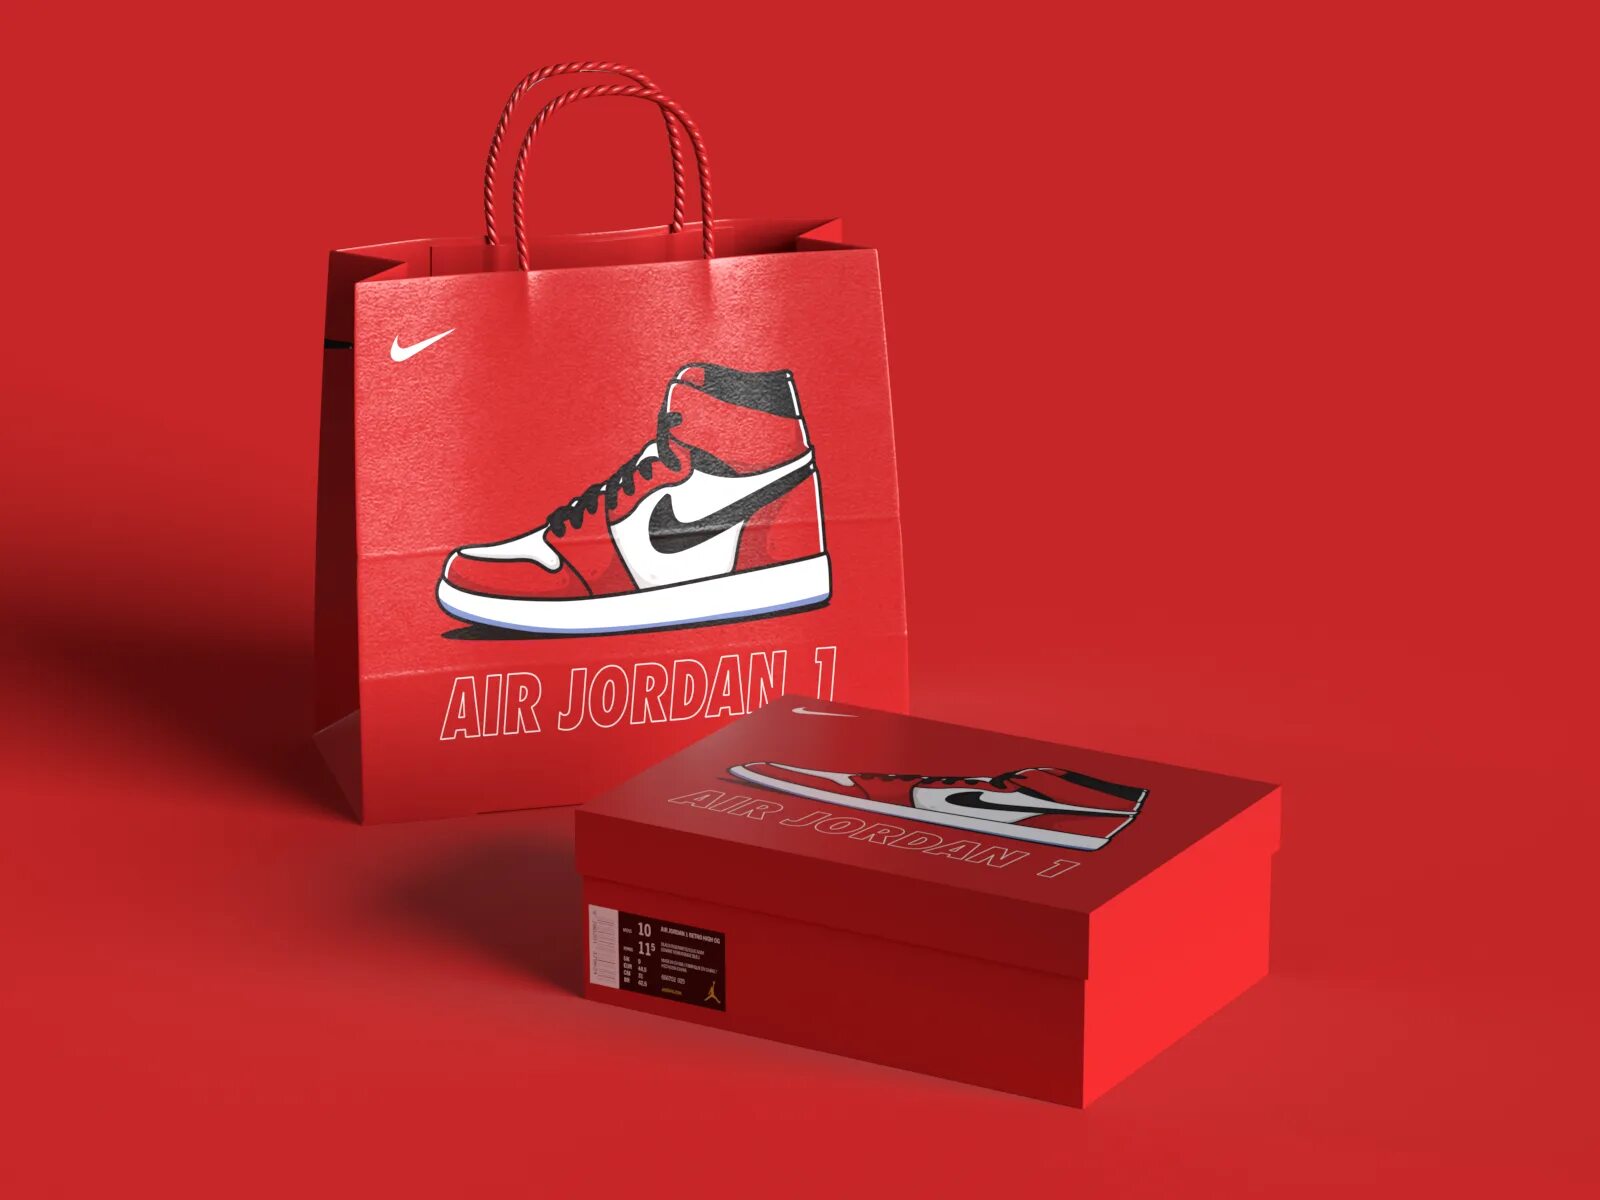 Nike Air Jordan Box. Nike Shoe Box. Nike Air Jordan 1 коробка. Найк бокс